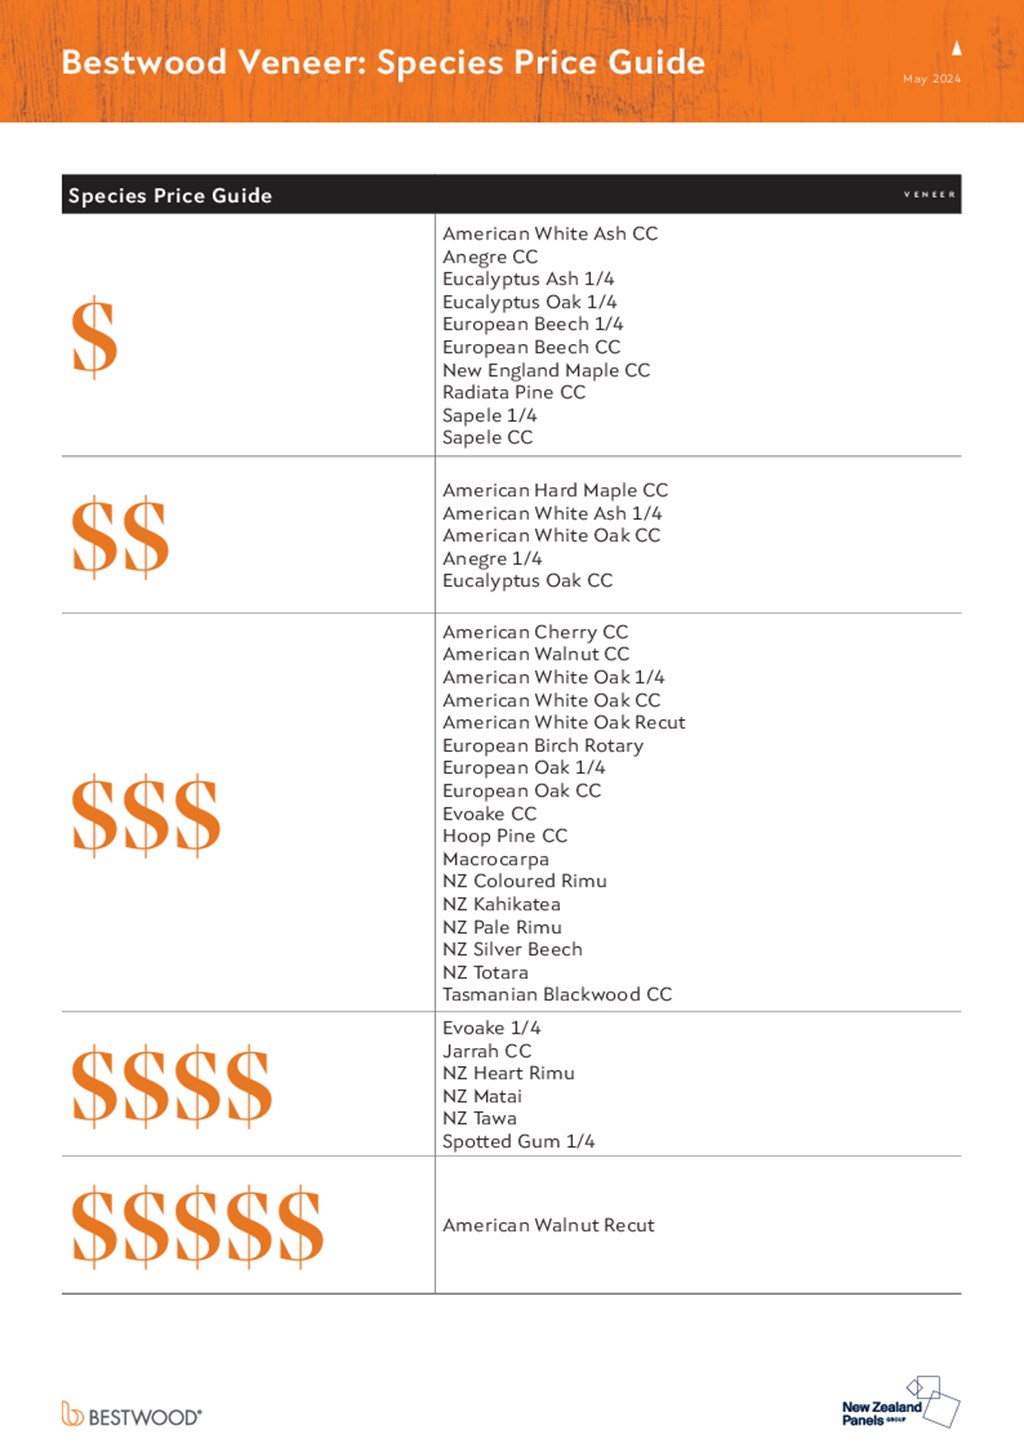 Bestwood Veneer Species Price Guide